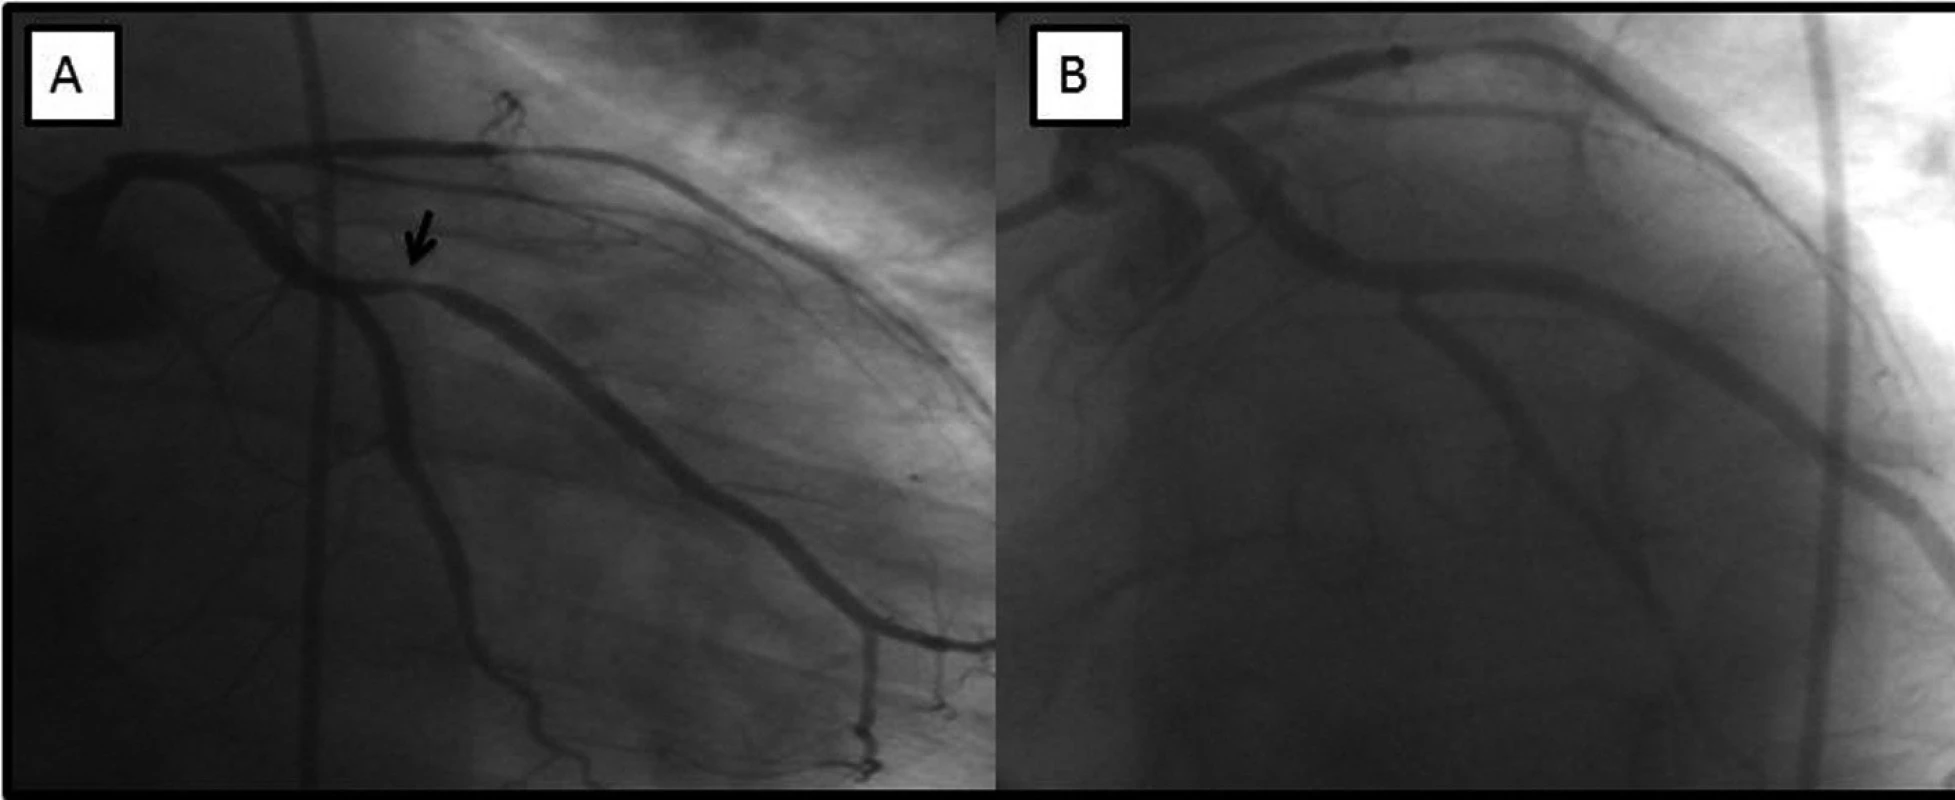 V části A angiograficky patrná významná stenóza marginální tepny (šipka), v levé části obrázku stav po implantaci stentu s optimálním konečným výsledkem.